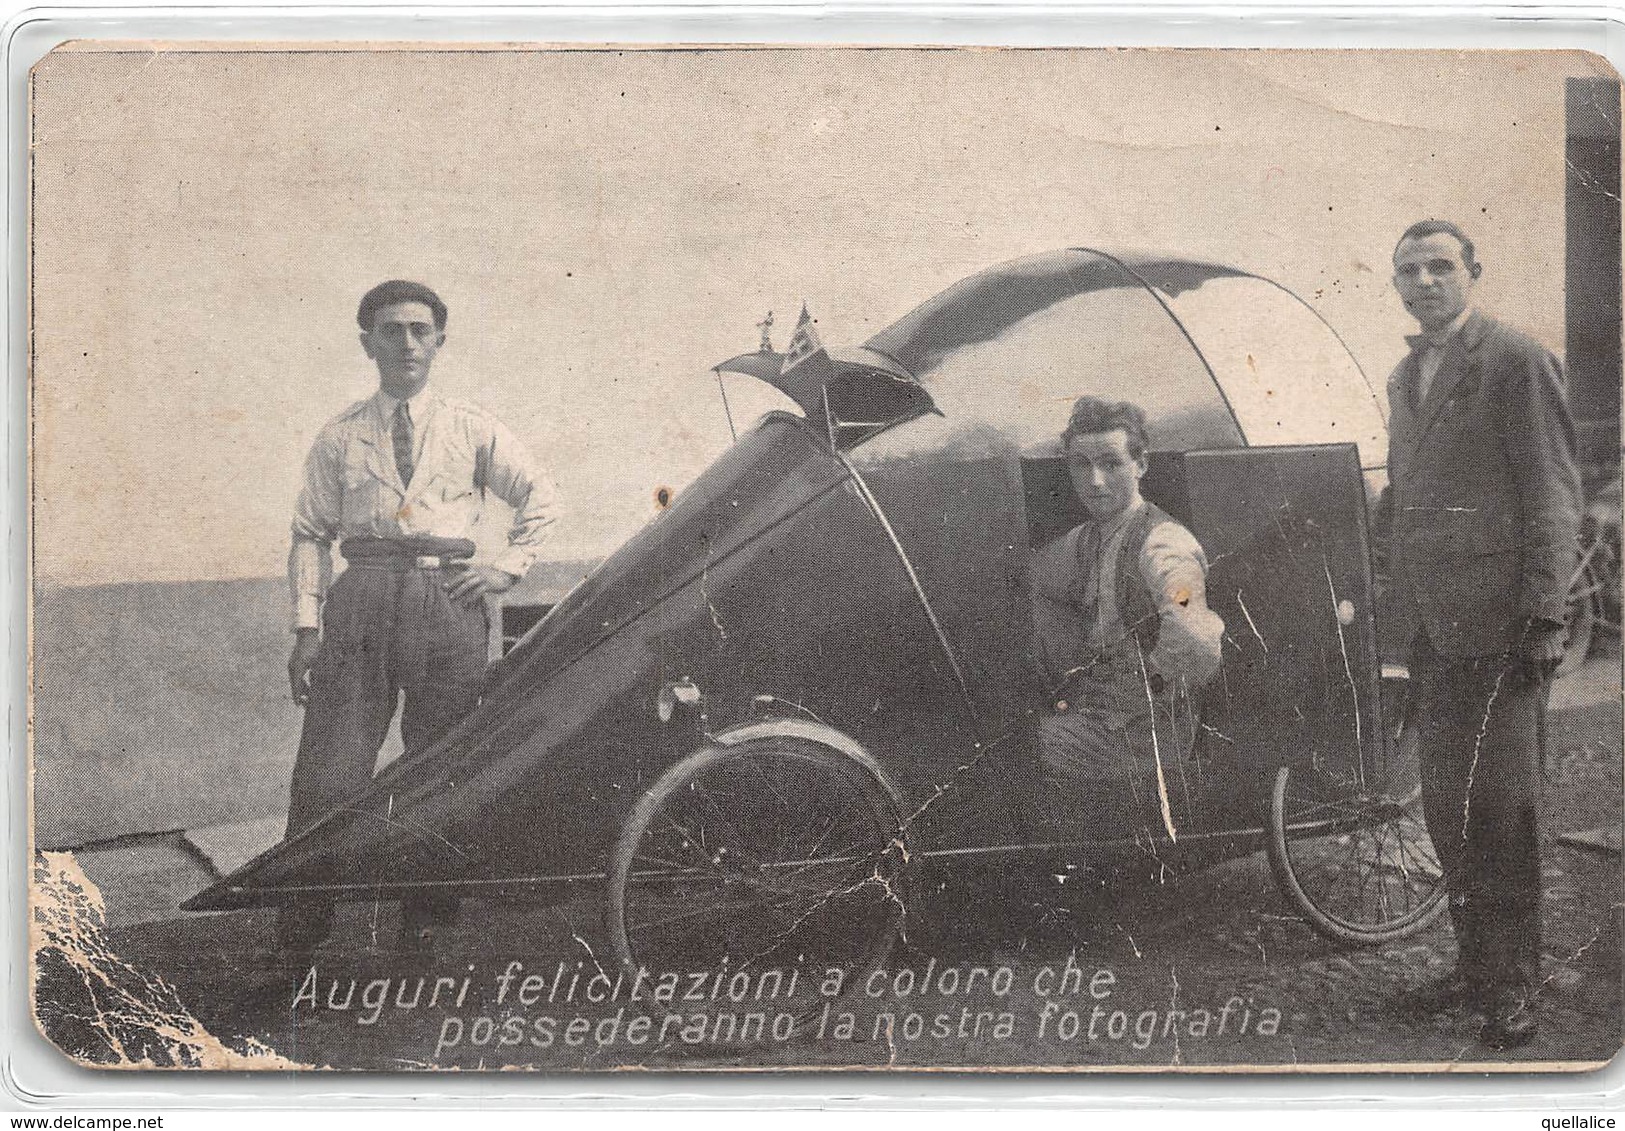 0321 "AUGURI FELICITAZIONI A COLORO CHE POSSEDERANNO LA NOSTRA FOTOGRAFIA - 1908" ANIMATA, AUTO. FOTOGRAFIA ORIGINALE - Cars